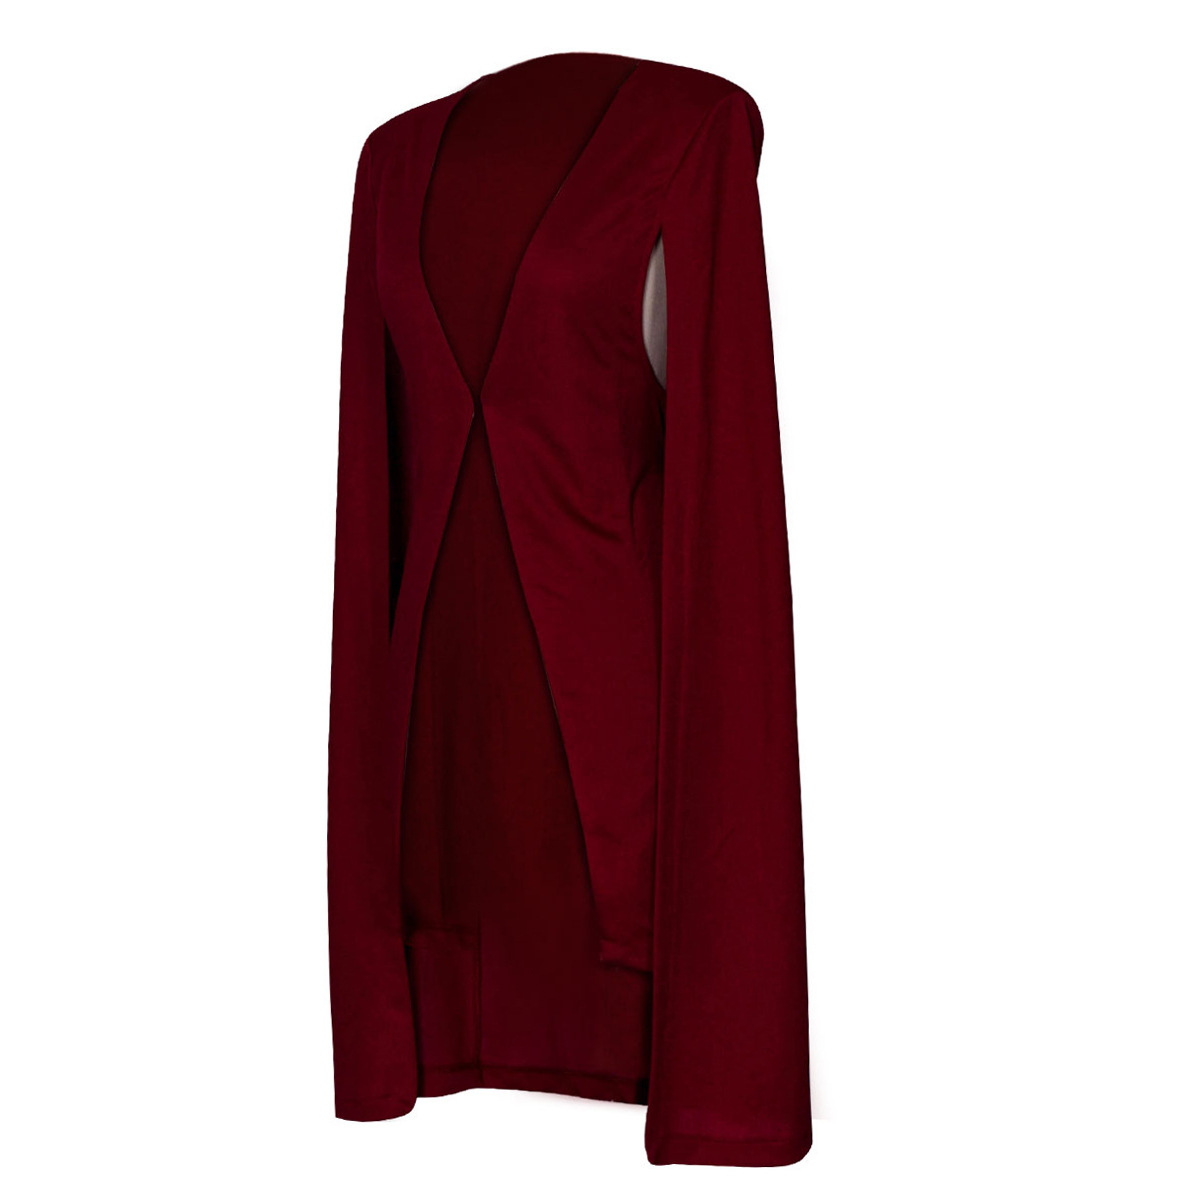 Elegant  Women's Solid Color Cloak  Blazer Red